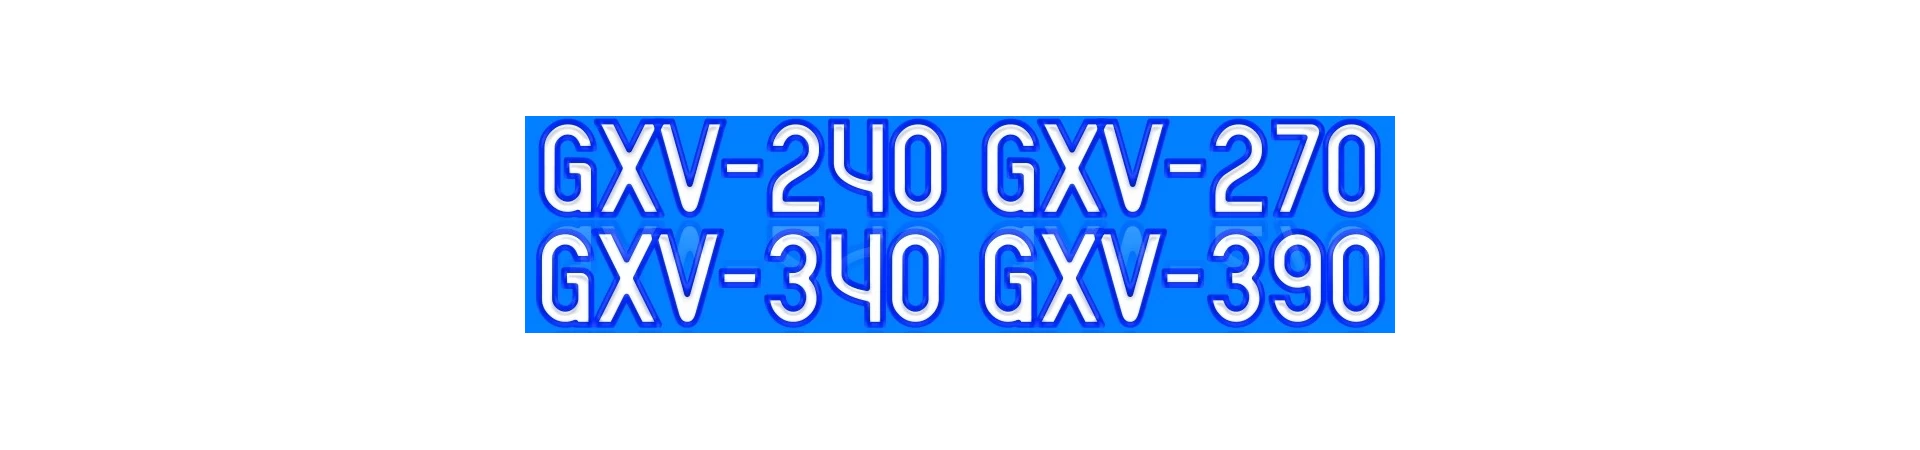 RECAMBIOS y Repuestos para Motor HONDA GXV240 GXV270 GXV340 GXV390